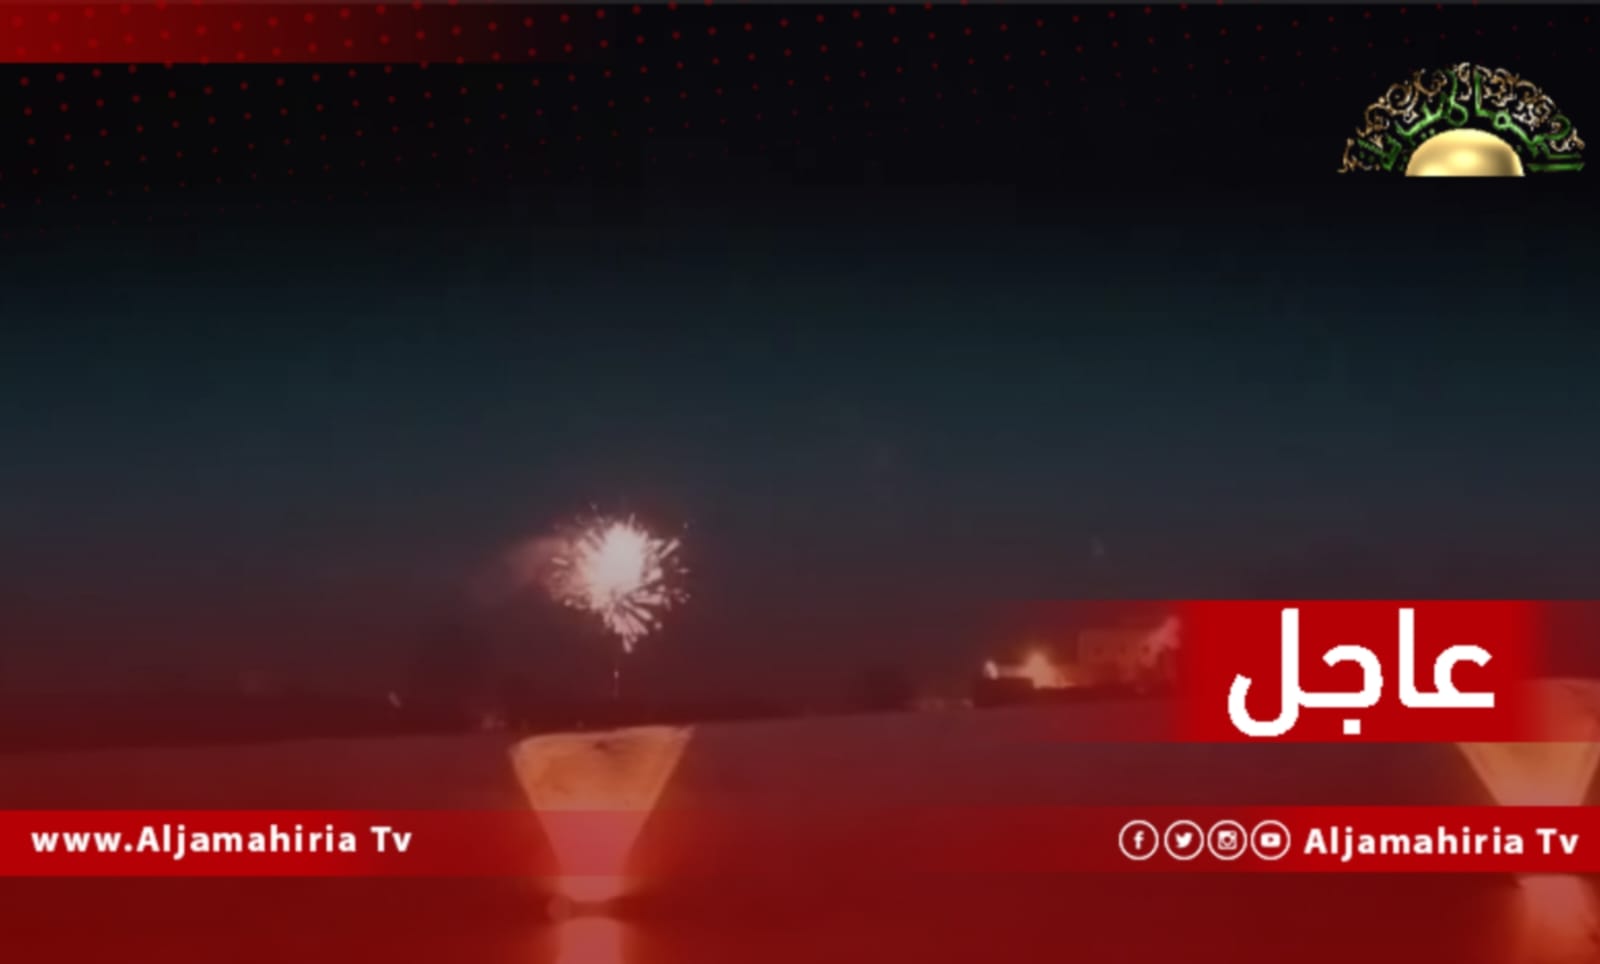 عاجل / شباب طريق المطار طرابلس يحتفلون بالذكرى الـ 53 لعيد ثورة الفاتح من سبتمبر العظيم ويطلقون الألعاب النارية